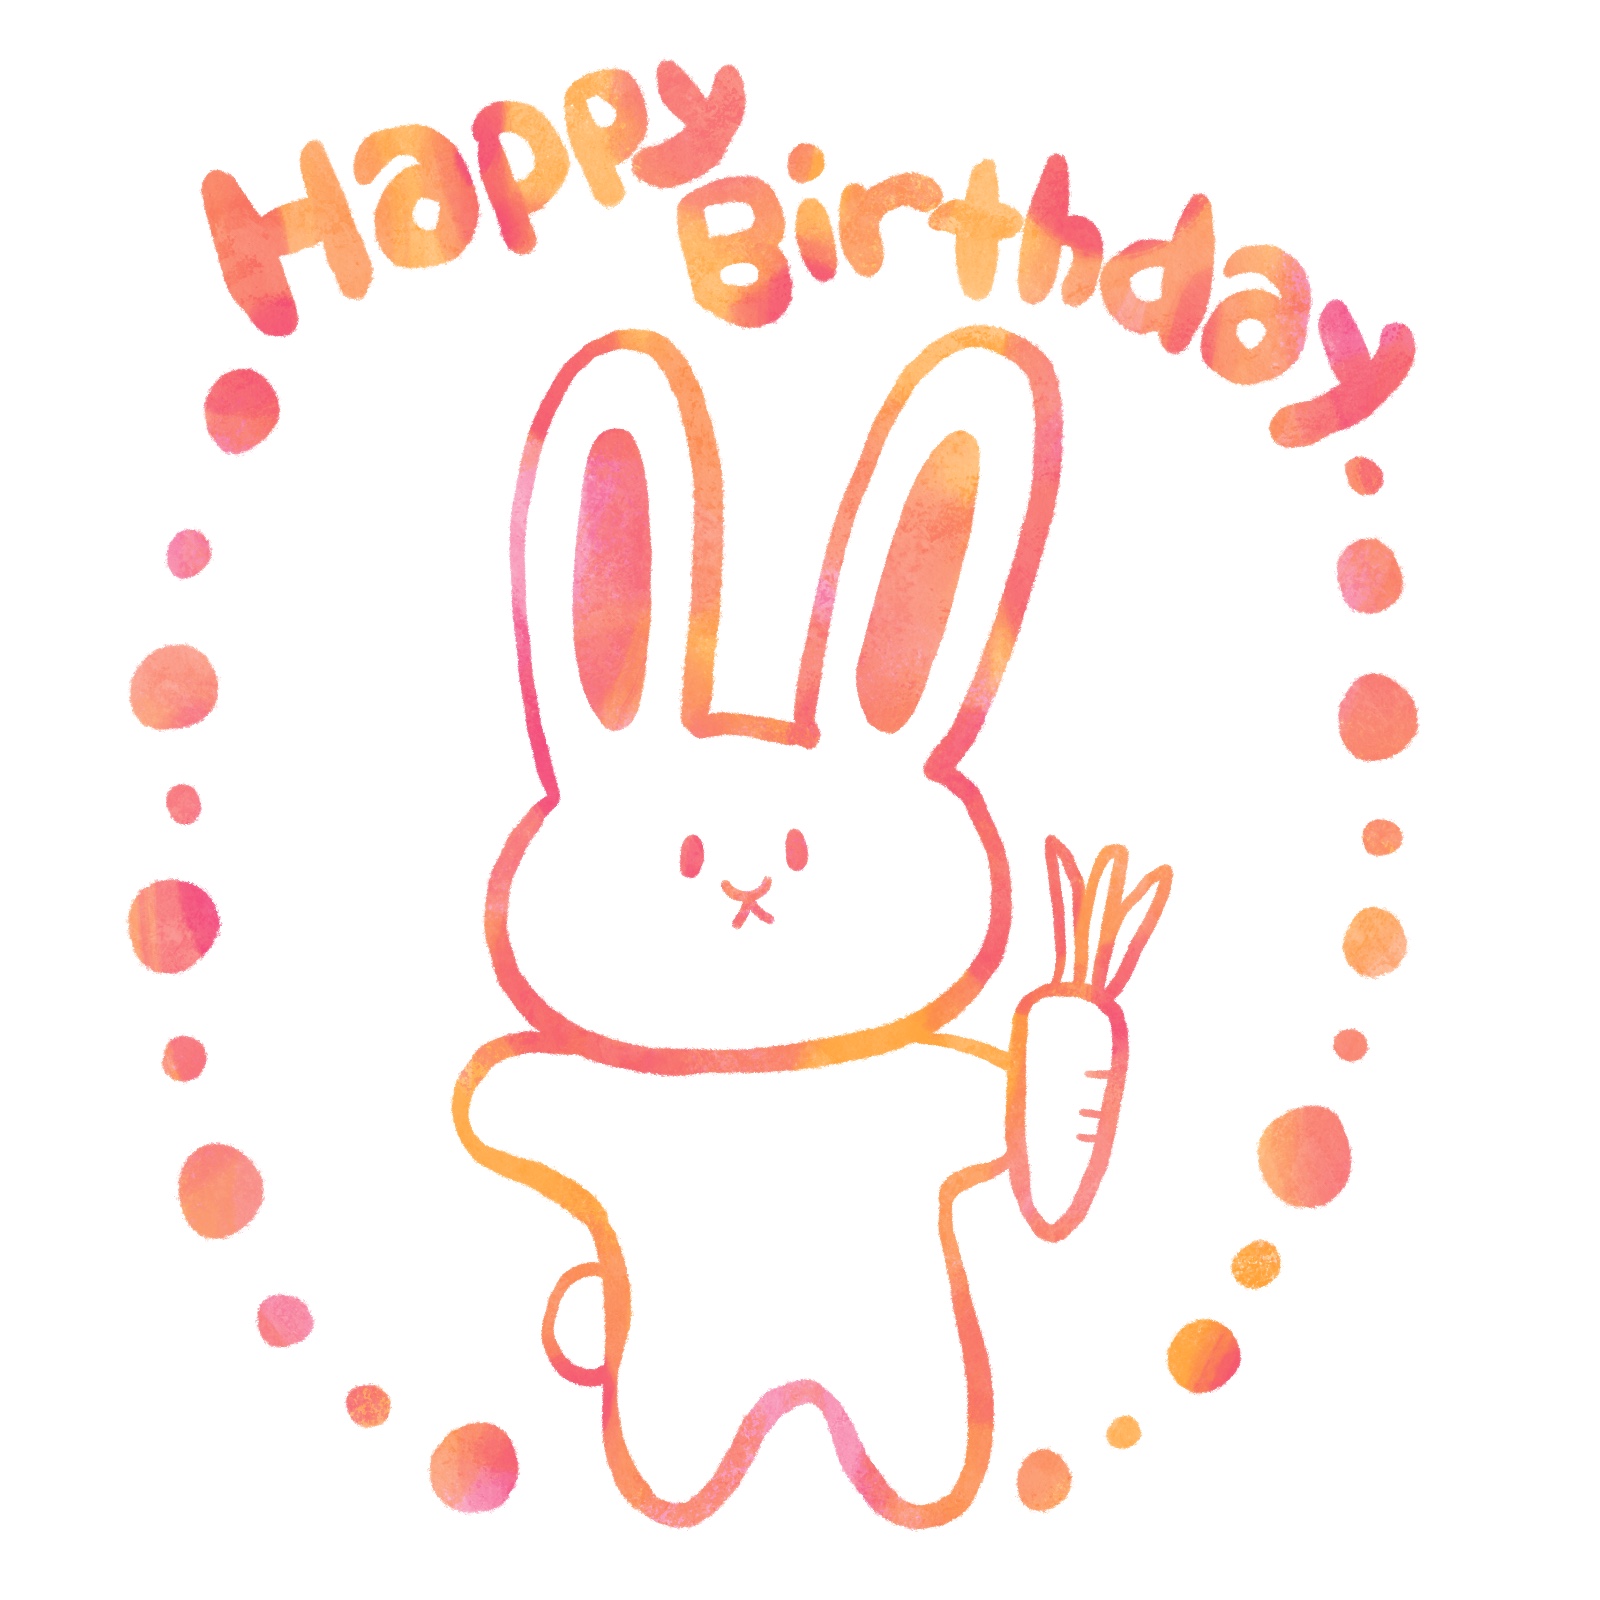 Happy Birthdayの文字とウサギのイラスト